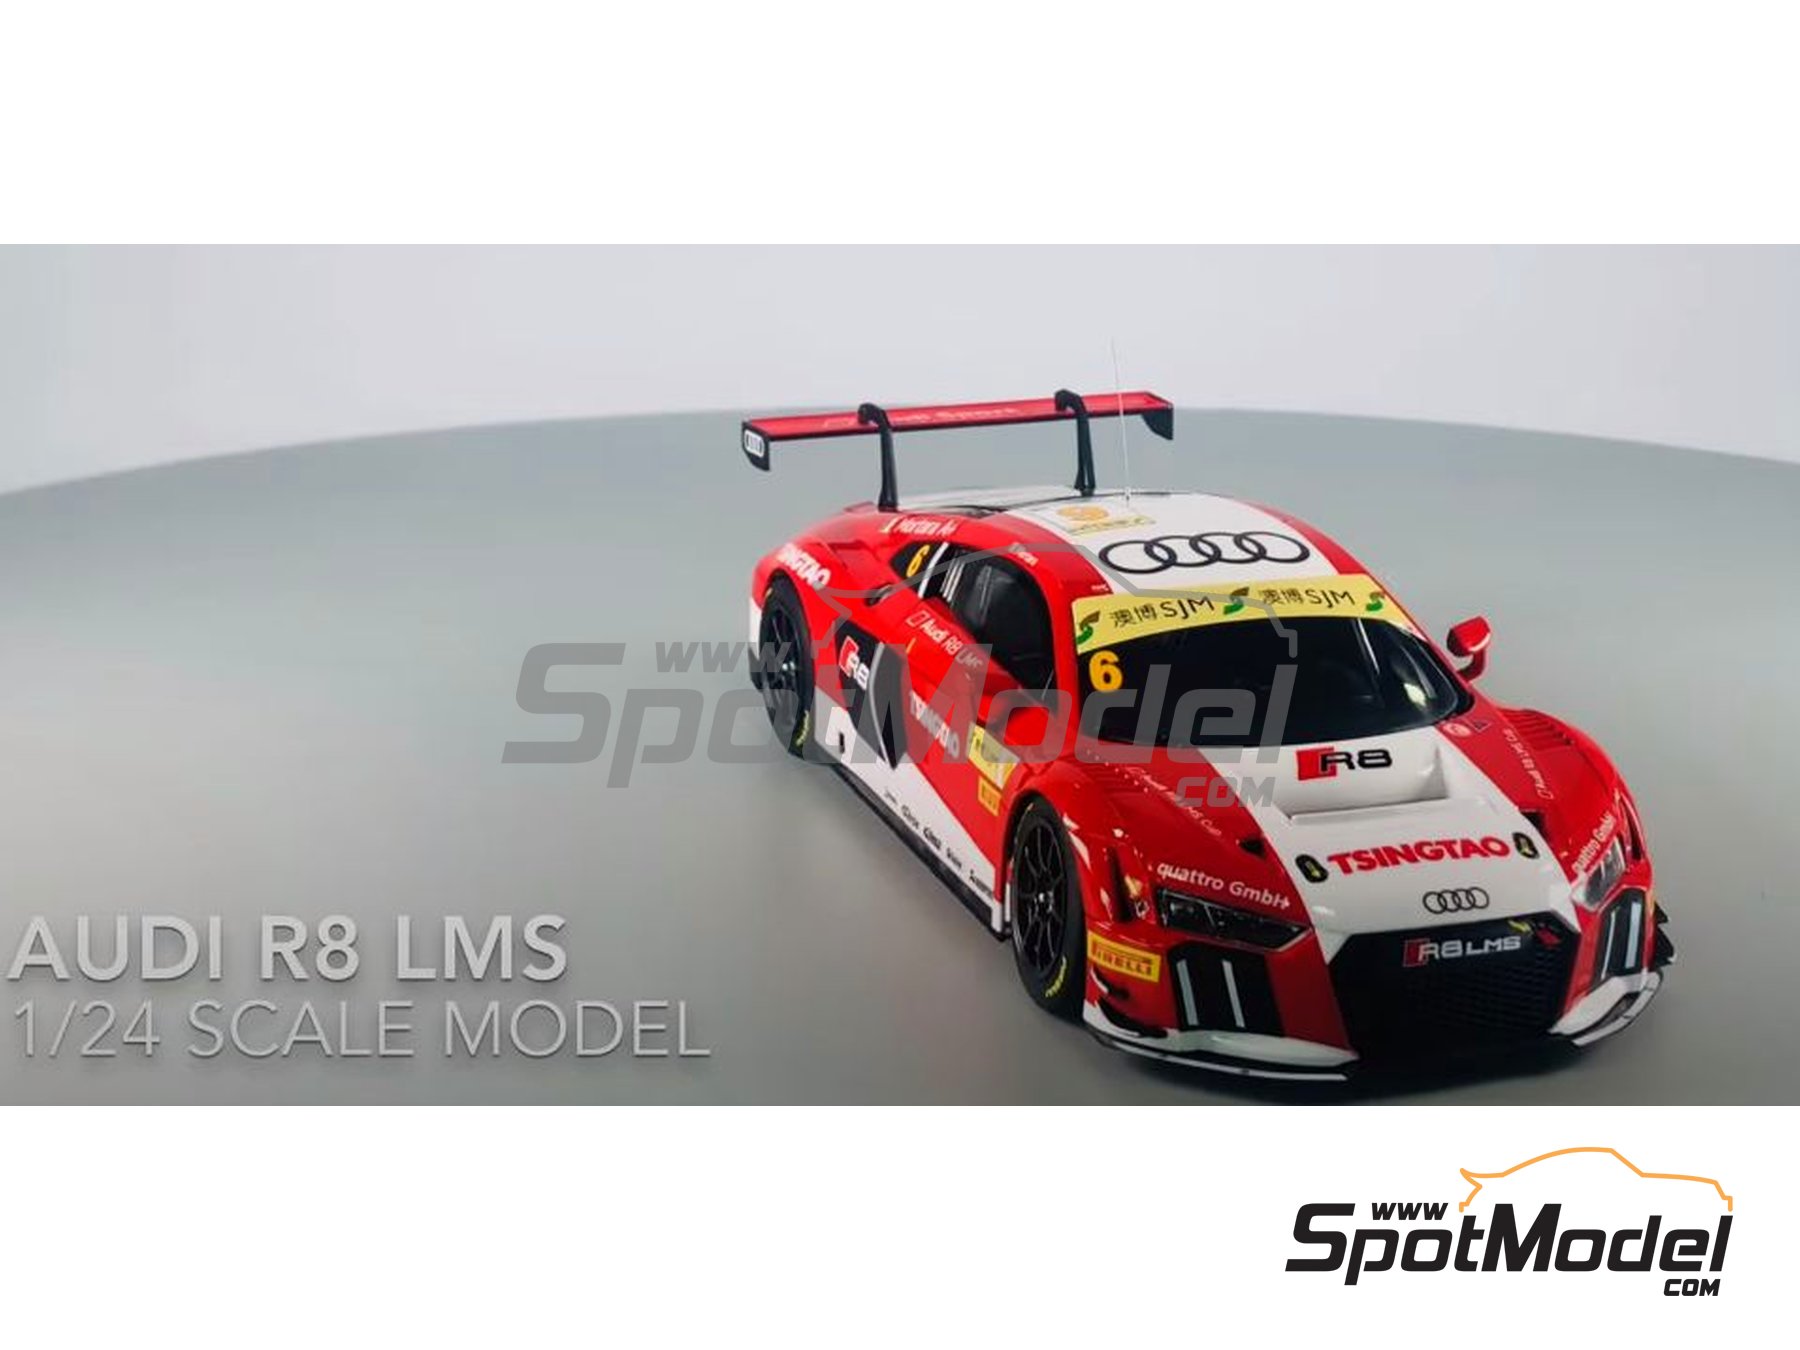 Platts/NUNU 1/24 Racing Series Audi R8 LMS GT3 2015 FIA GT3 World Cup Model 